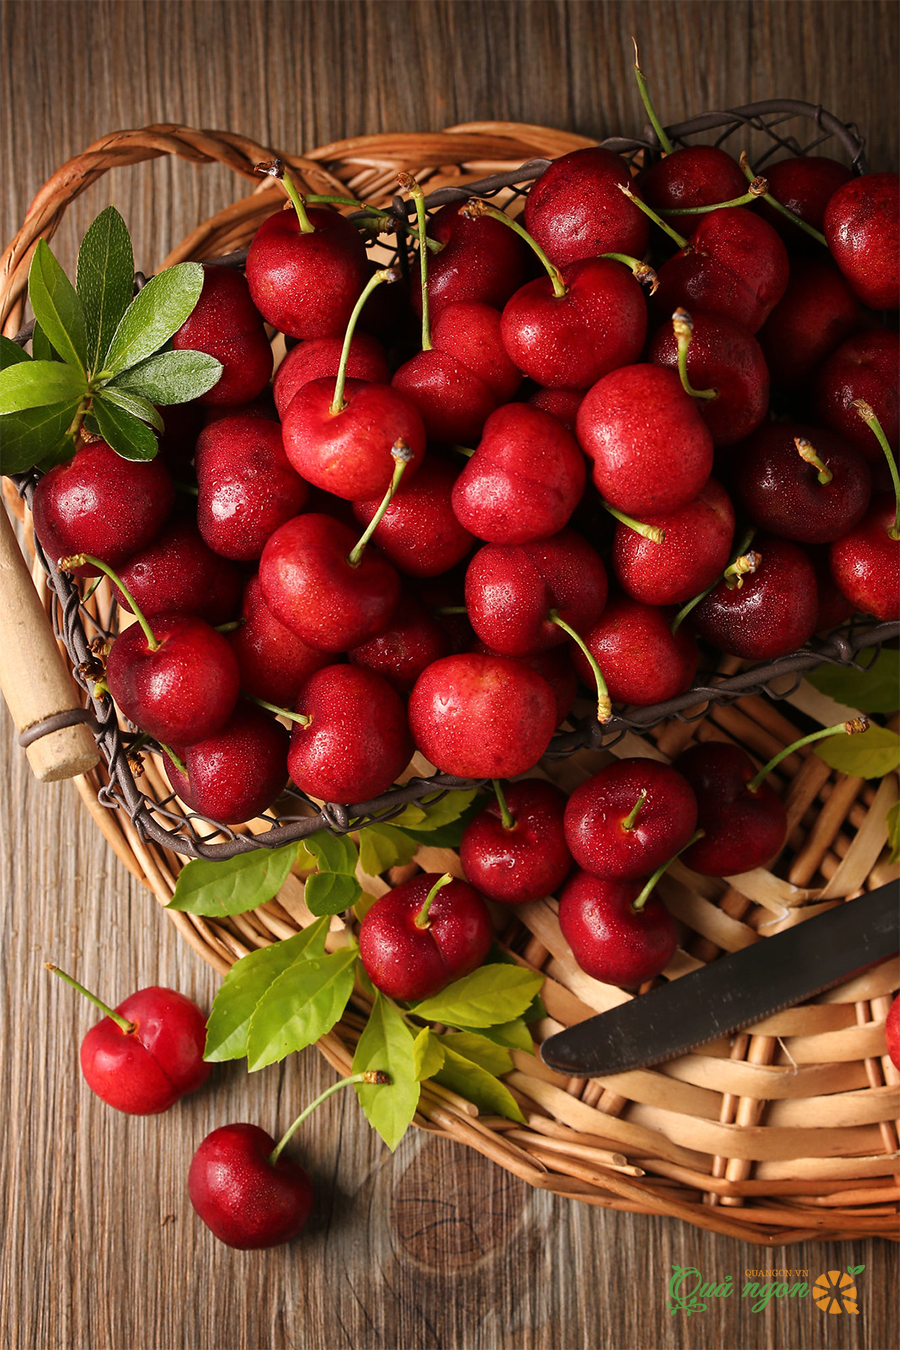 Giải đáp các vấn đề khi ăn cherry trong quá trình mang thai